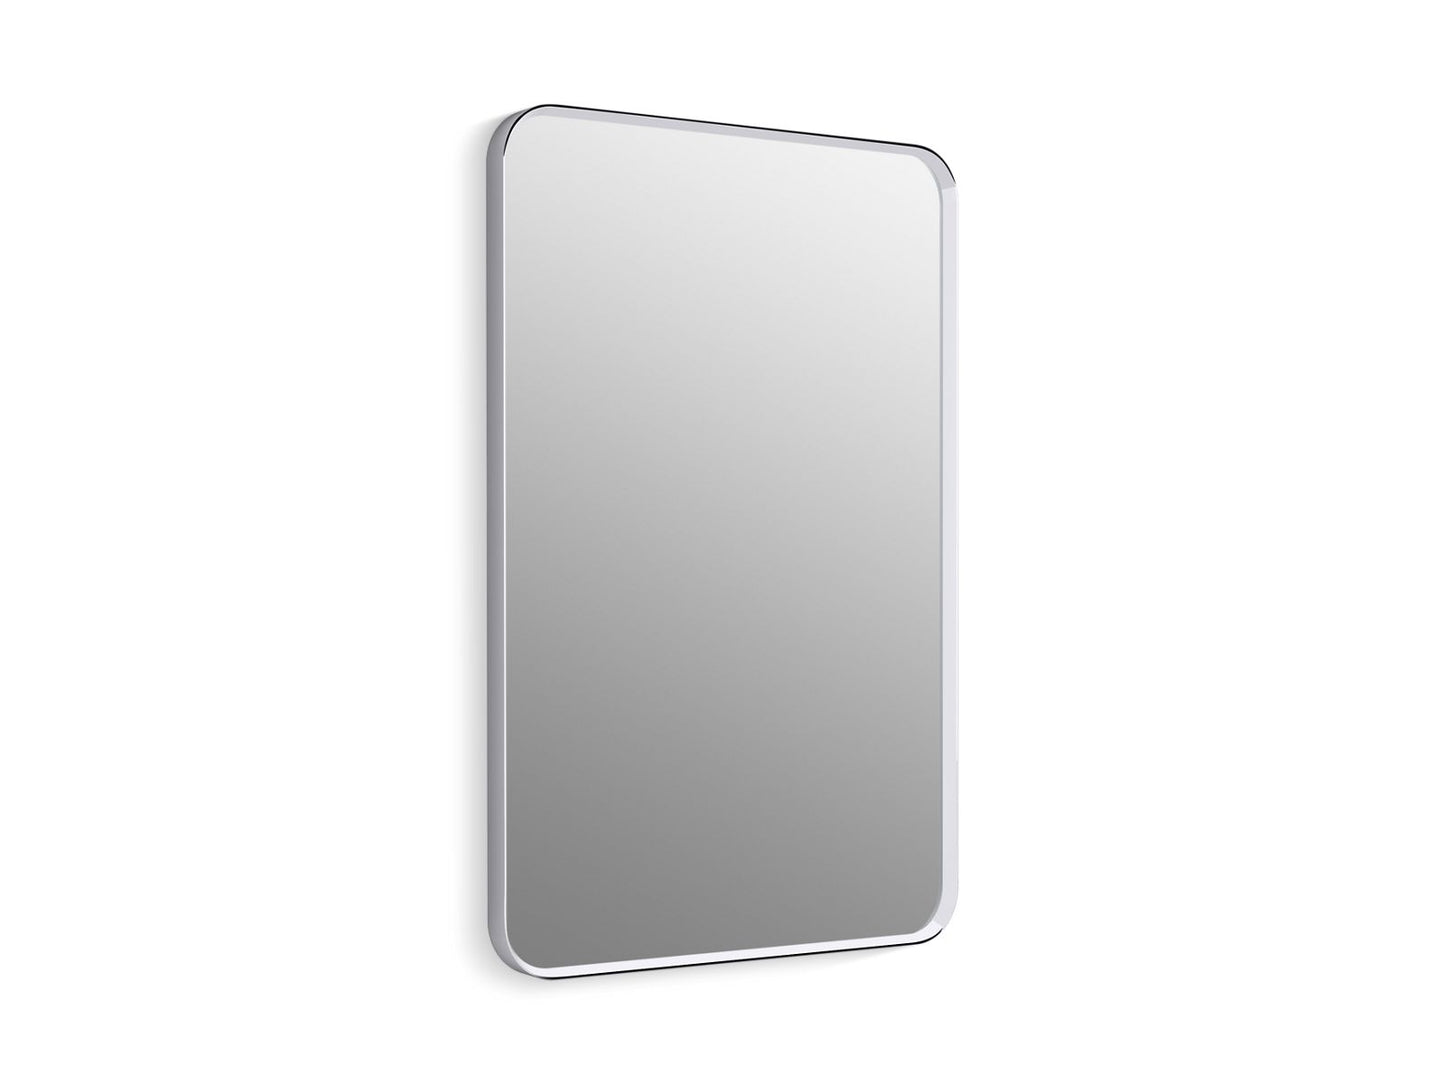 KOHLER K-31364 Essential 24" x 36" rectangular framed mirror